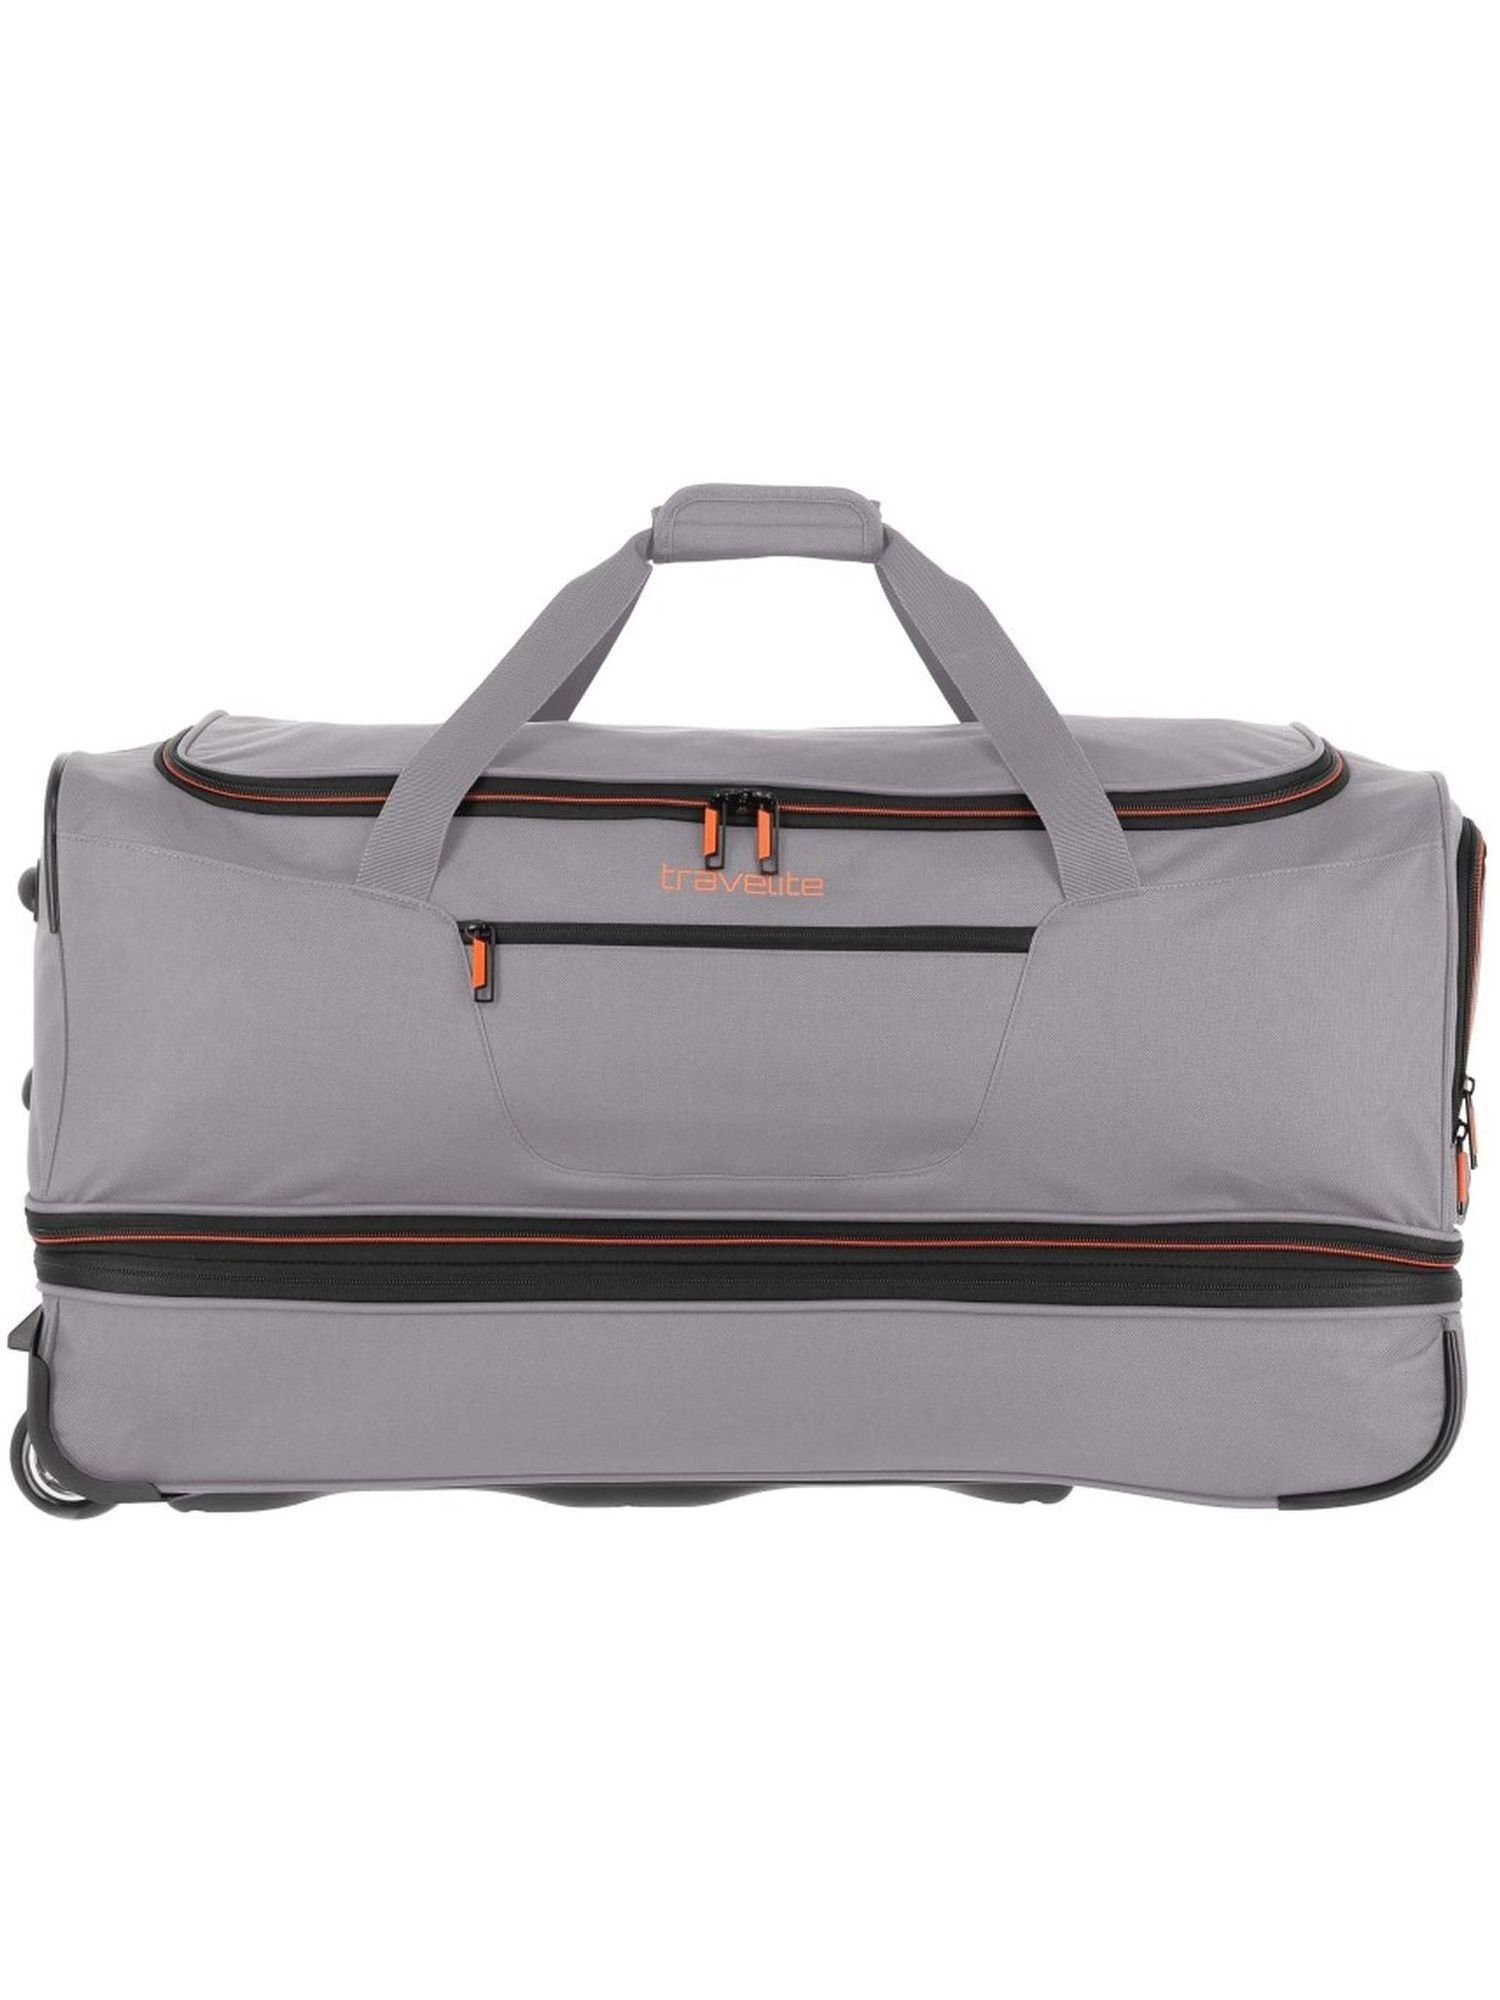 travelite Reisetasche Basics, 70 cm, dunkelgrün, mit Rollen, Integrierte  Dehnfalte für erweiterbares Volumen